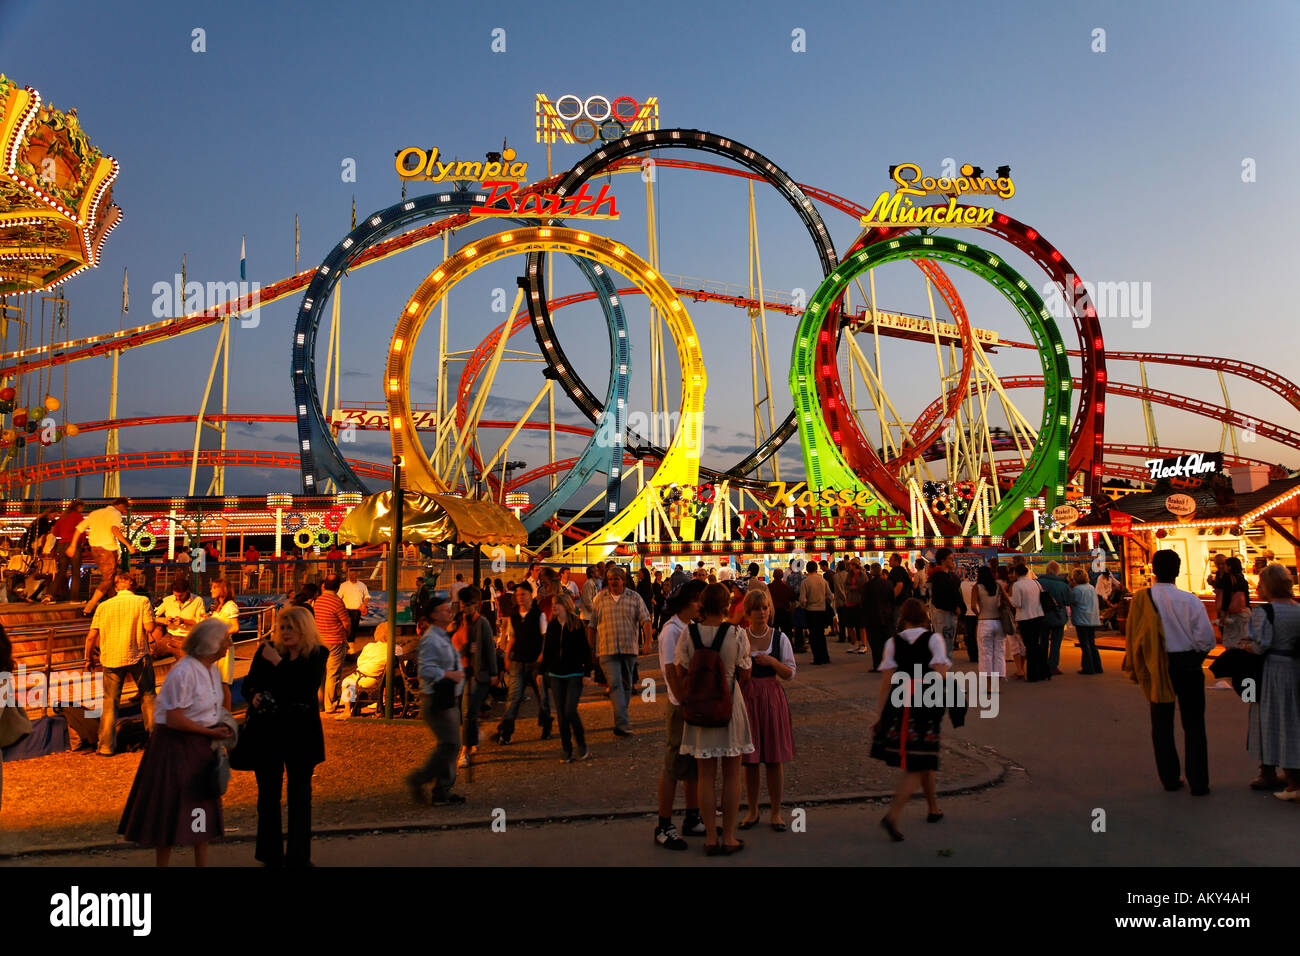 Roller Coaster de boucle d'Olympia, l'Oktoberfest, la fête de la bière de Munich, Bavière, Allemagne Banque D'Images